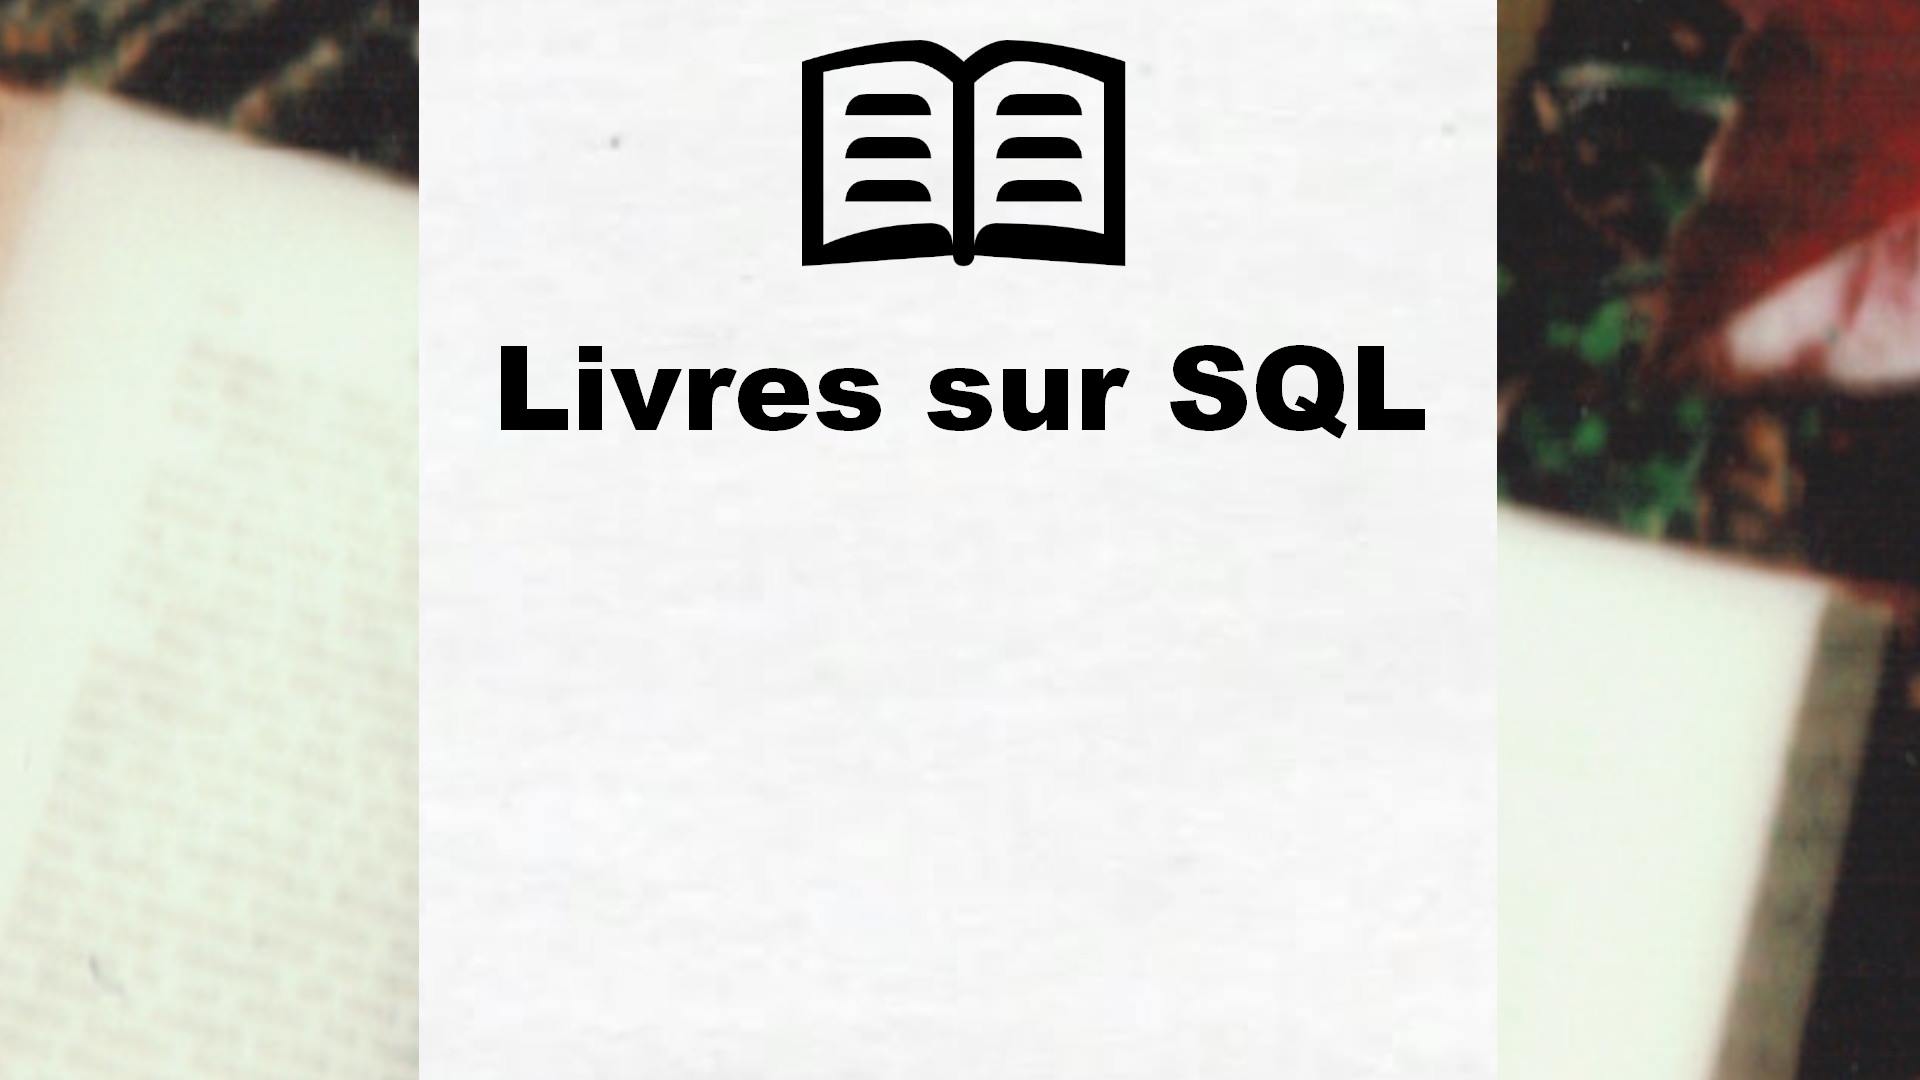 Livres sur SQL